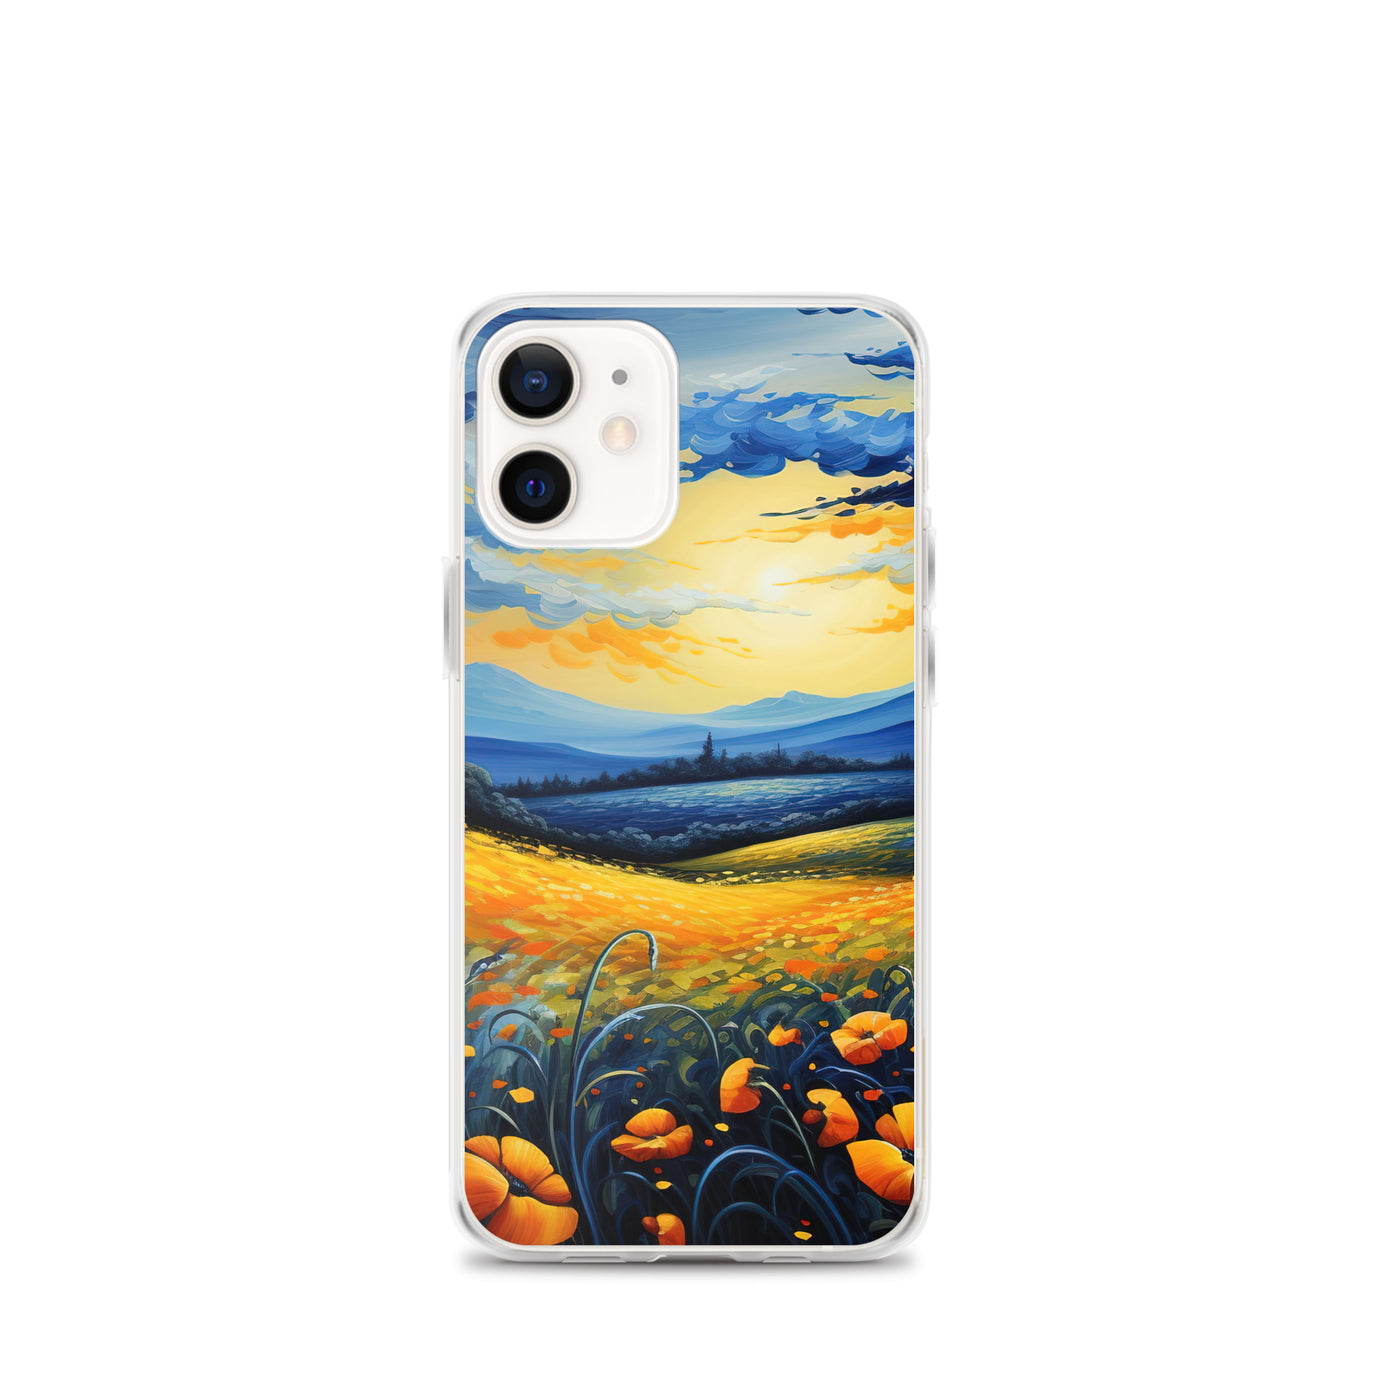 Berglandschaft mit schönen gelben Blumen - Landschaftsmalerei - iPhone Schutzhülle (durchsichtig) berge xxx iPhone 12 mini